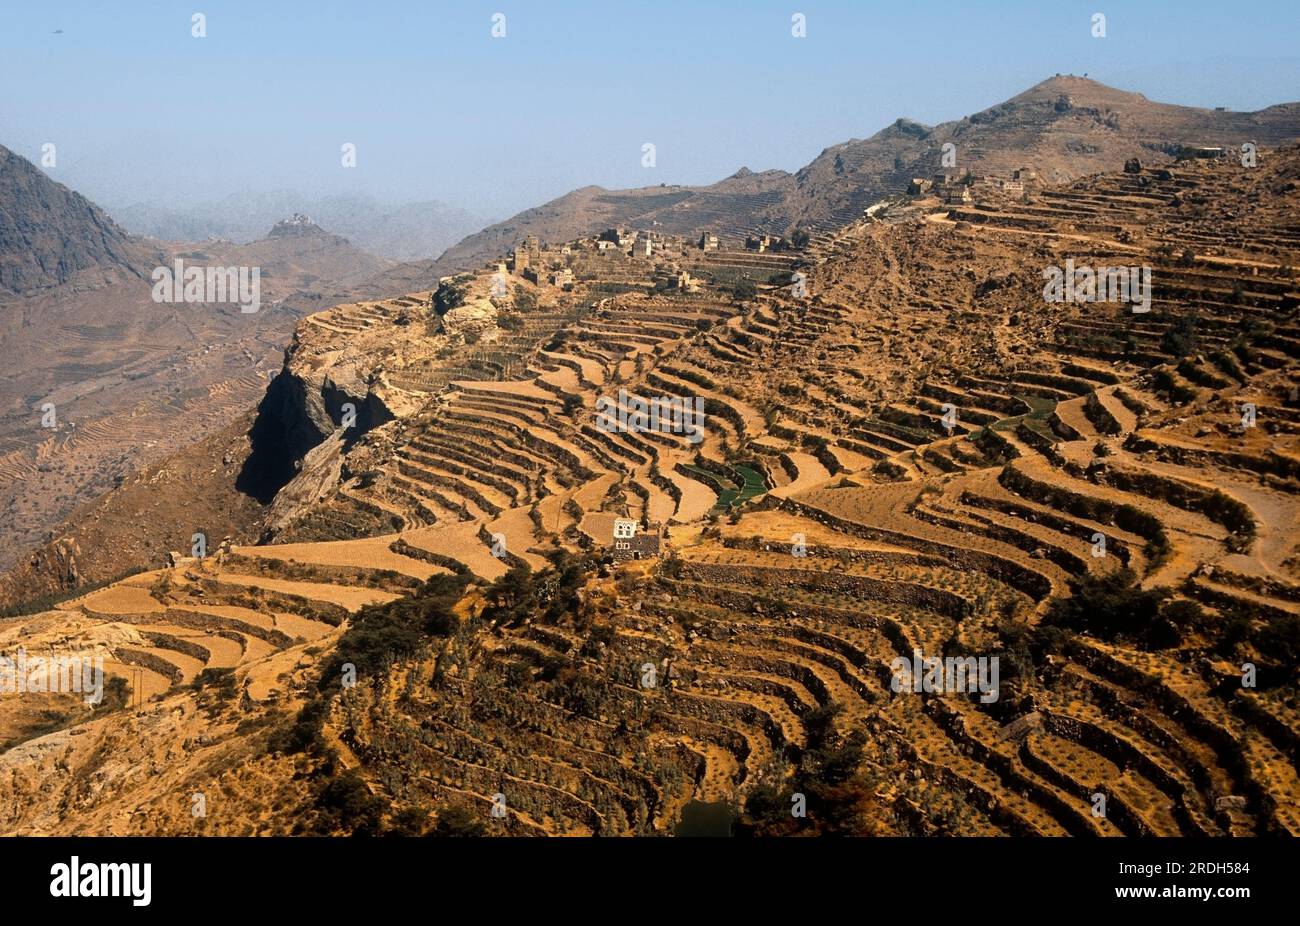 Asia Yemen - muretti a secco delimitano la coltivazione di cereali e qat Foto Stock